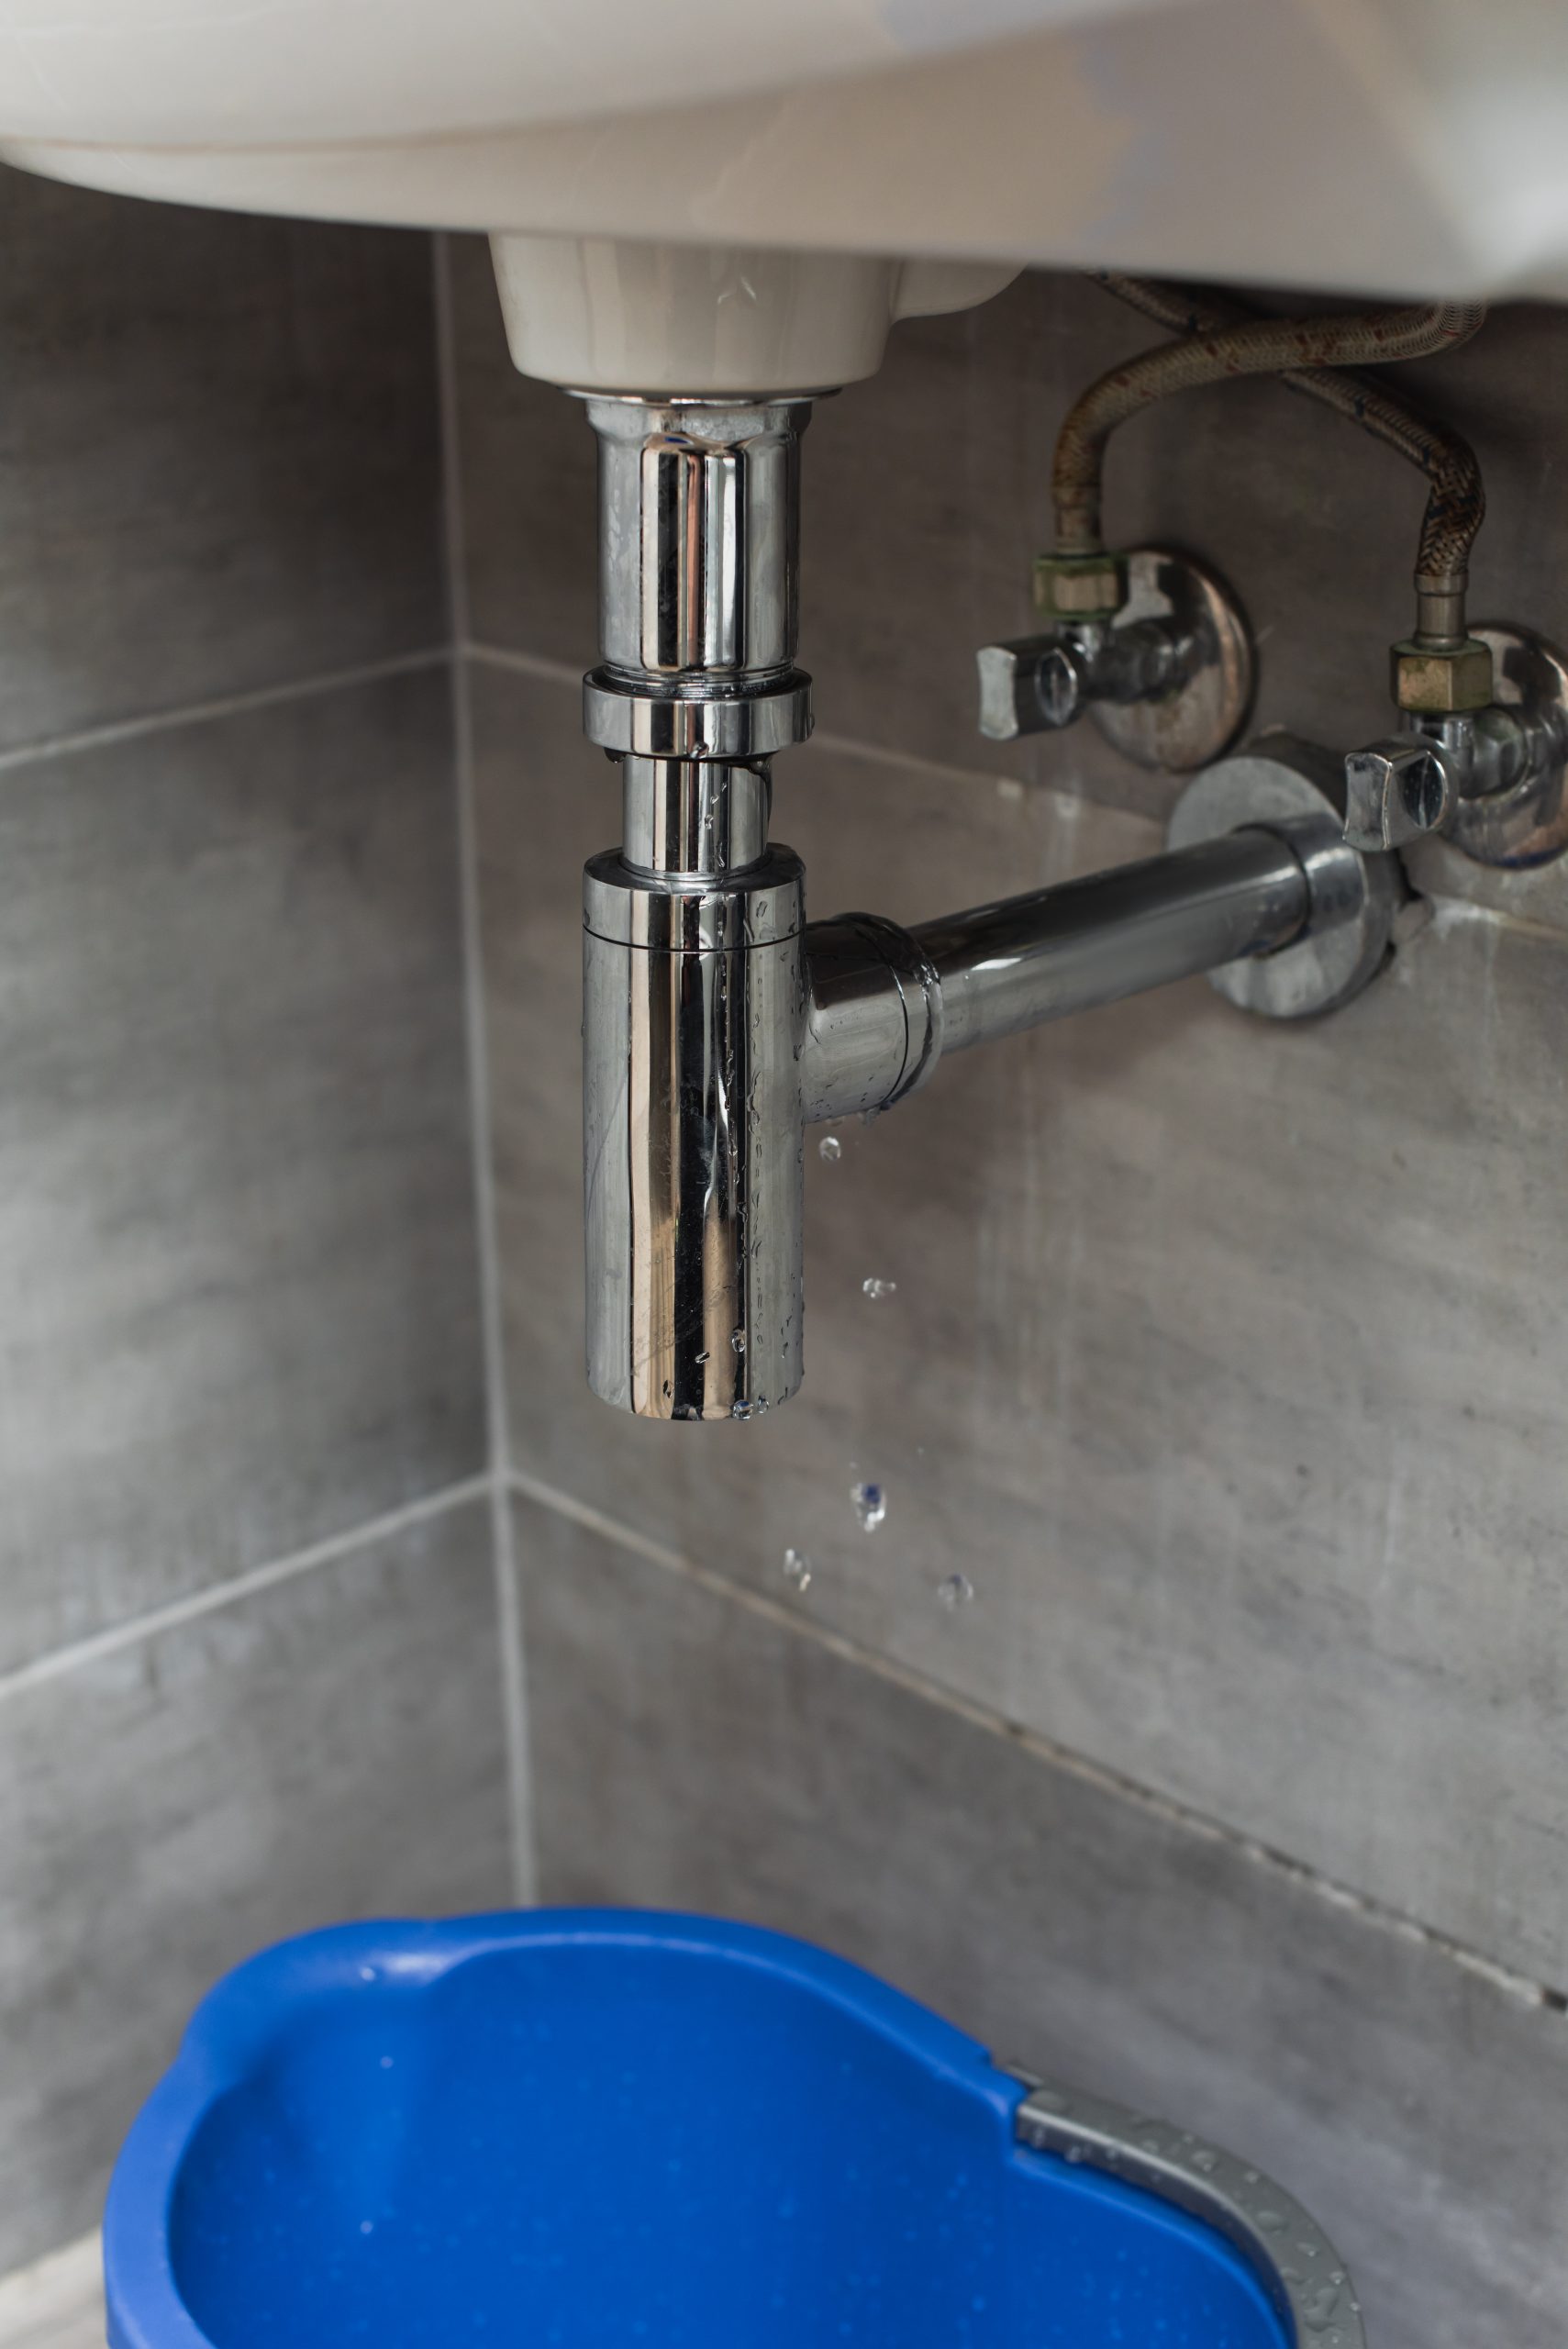 Blue bucket standing in bathroom under leaking pipe